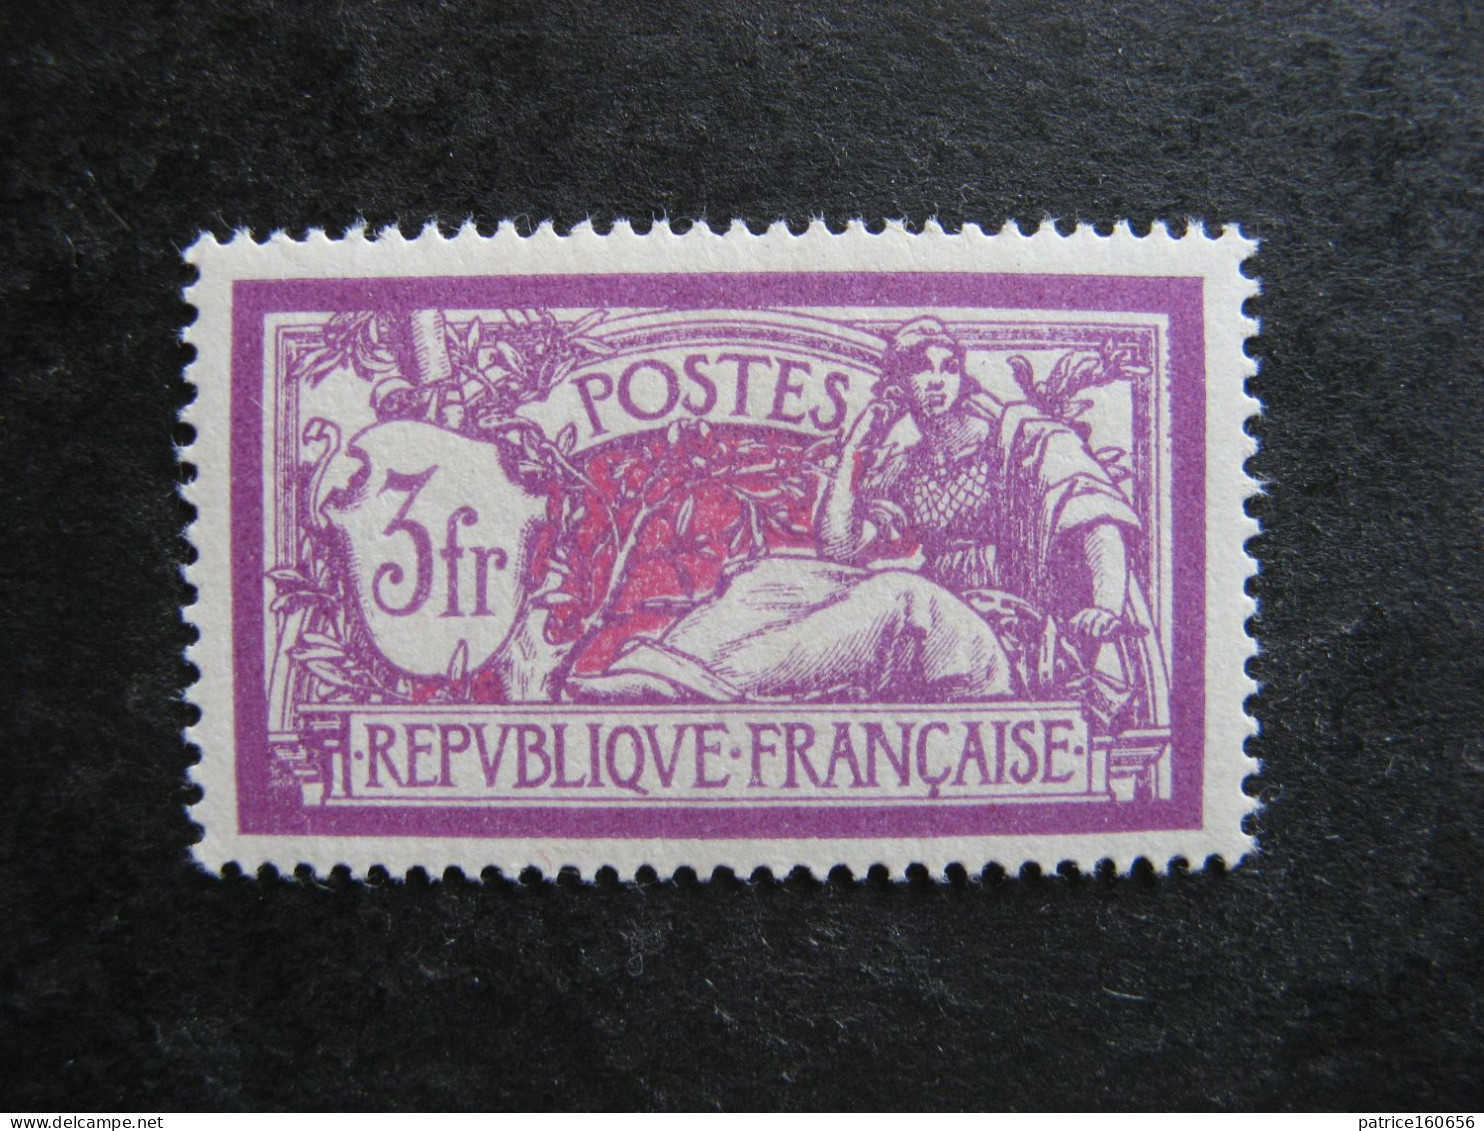 TB N°240, Neuf XX. - Unused Stamps